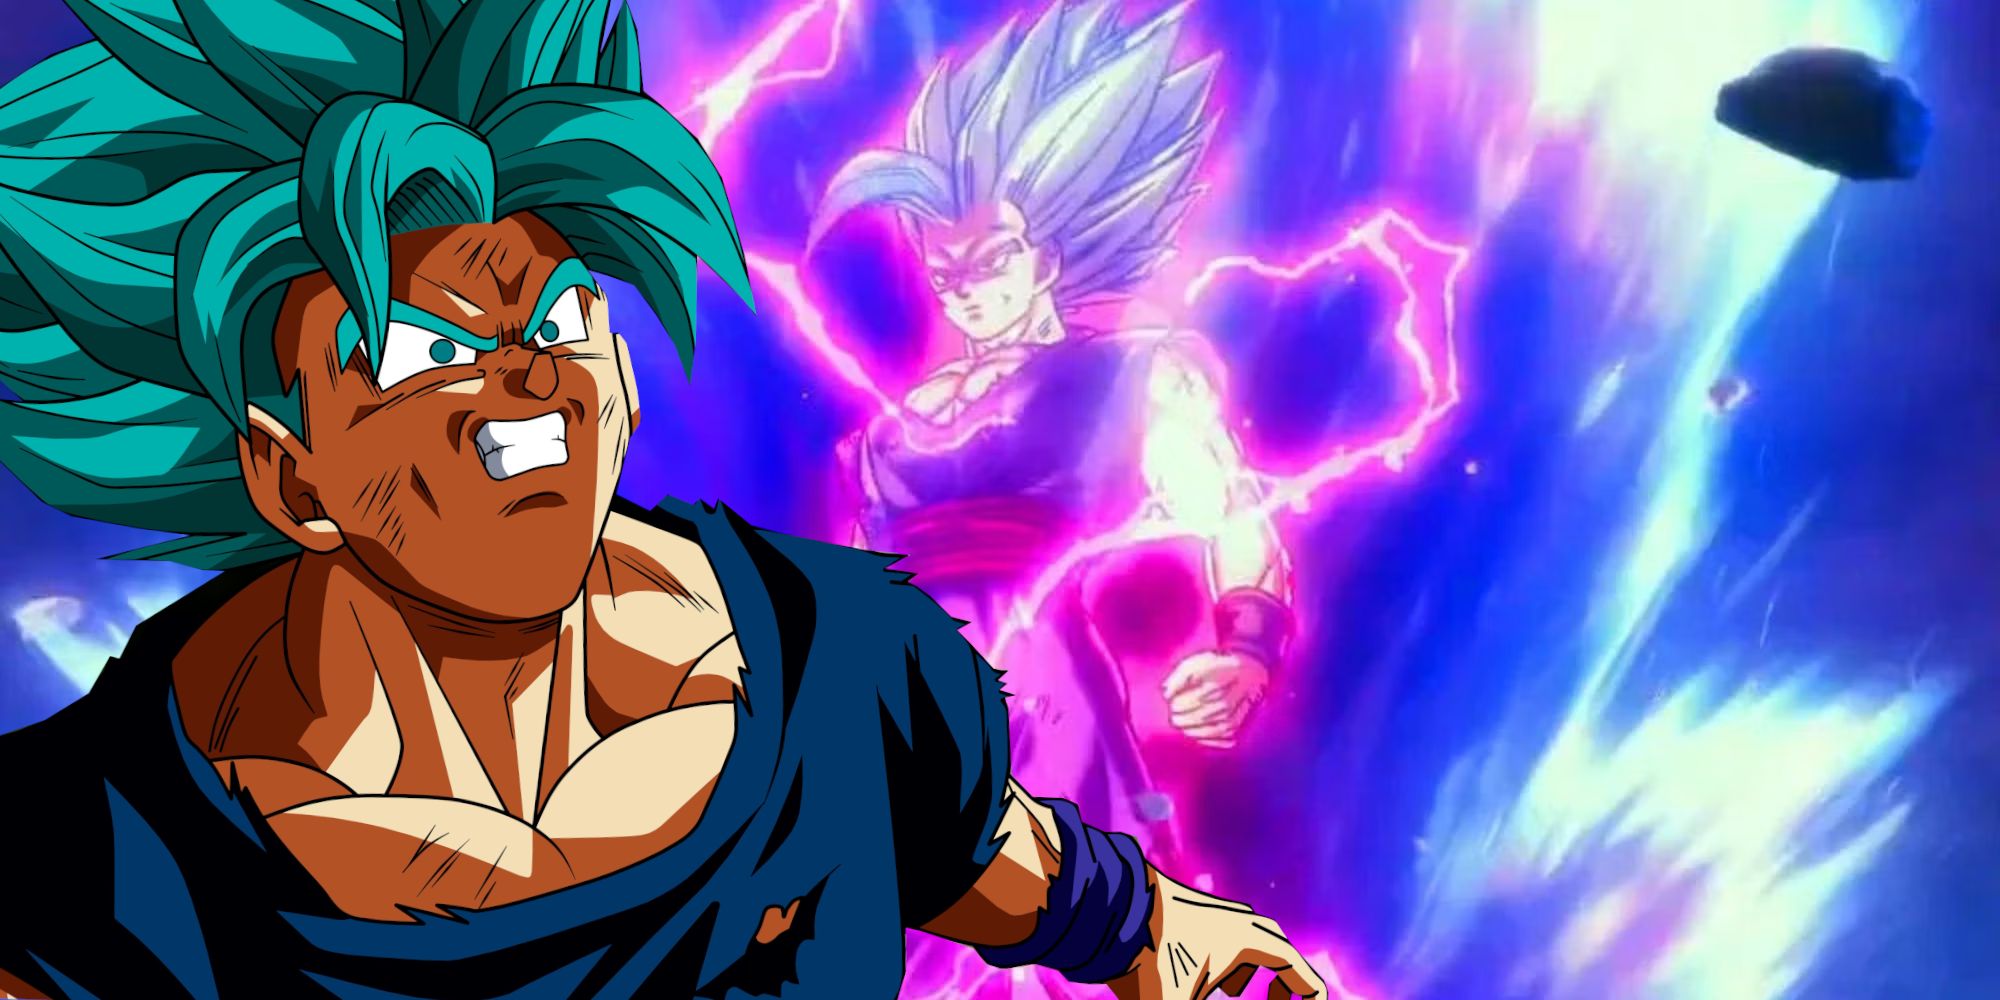 Scares Goku & Vegeta - Gohan's New Dragon Ball Super Form Earns